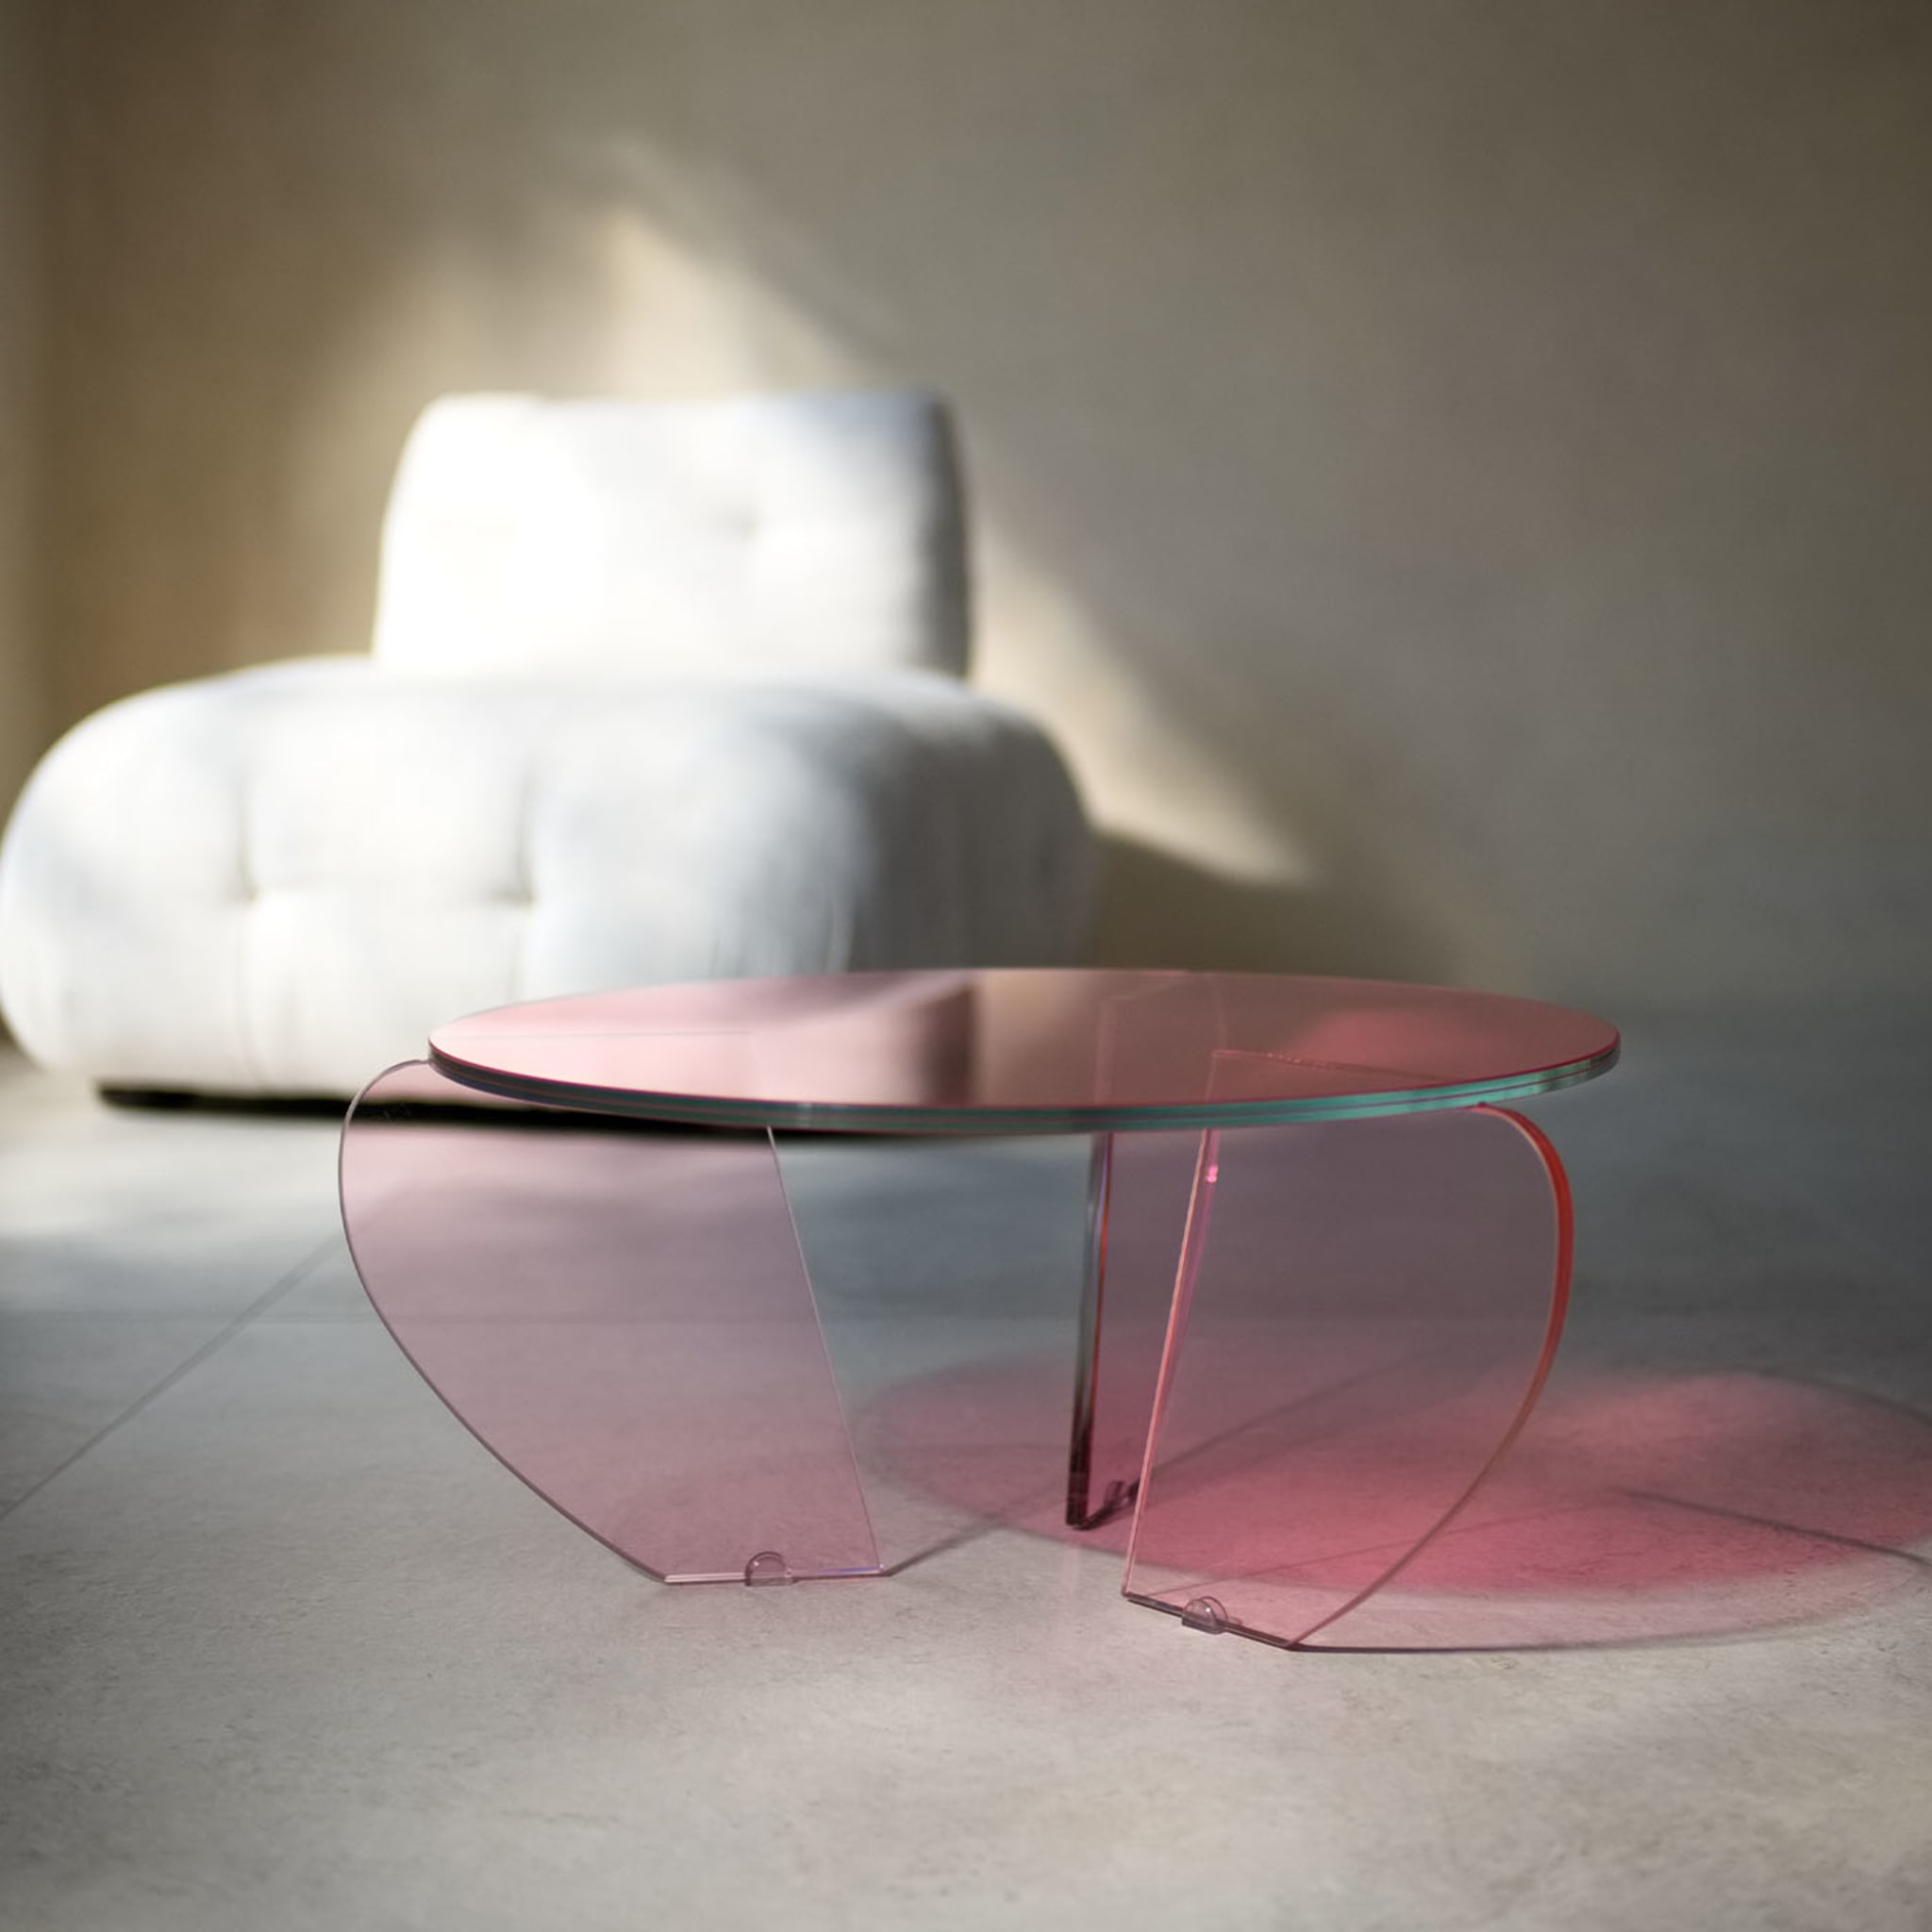 Teo Medium Colored Coffee Table by Andrea Petterini - Alternative view 2